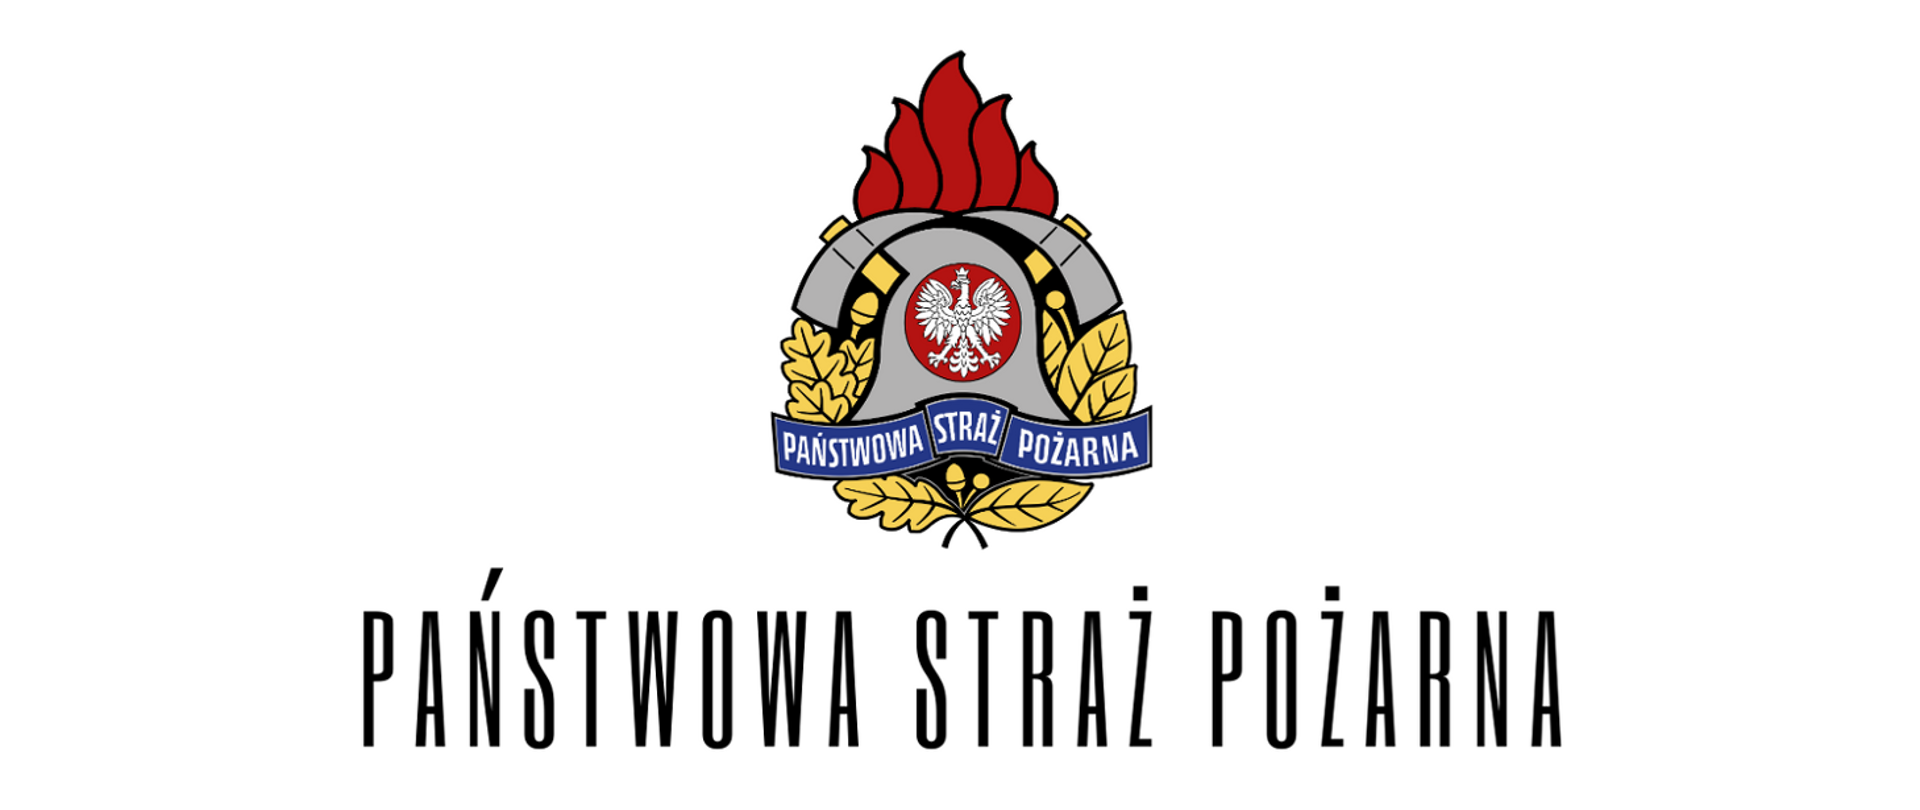 Zdjęcie przedstawia logo Państwowej Straży Pożarnej na białym tle. pod spodem podpis Państwowa Straż Pożarna